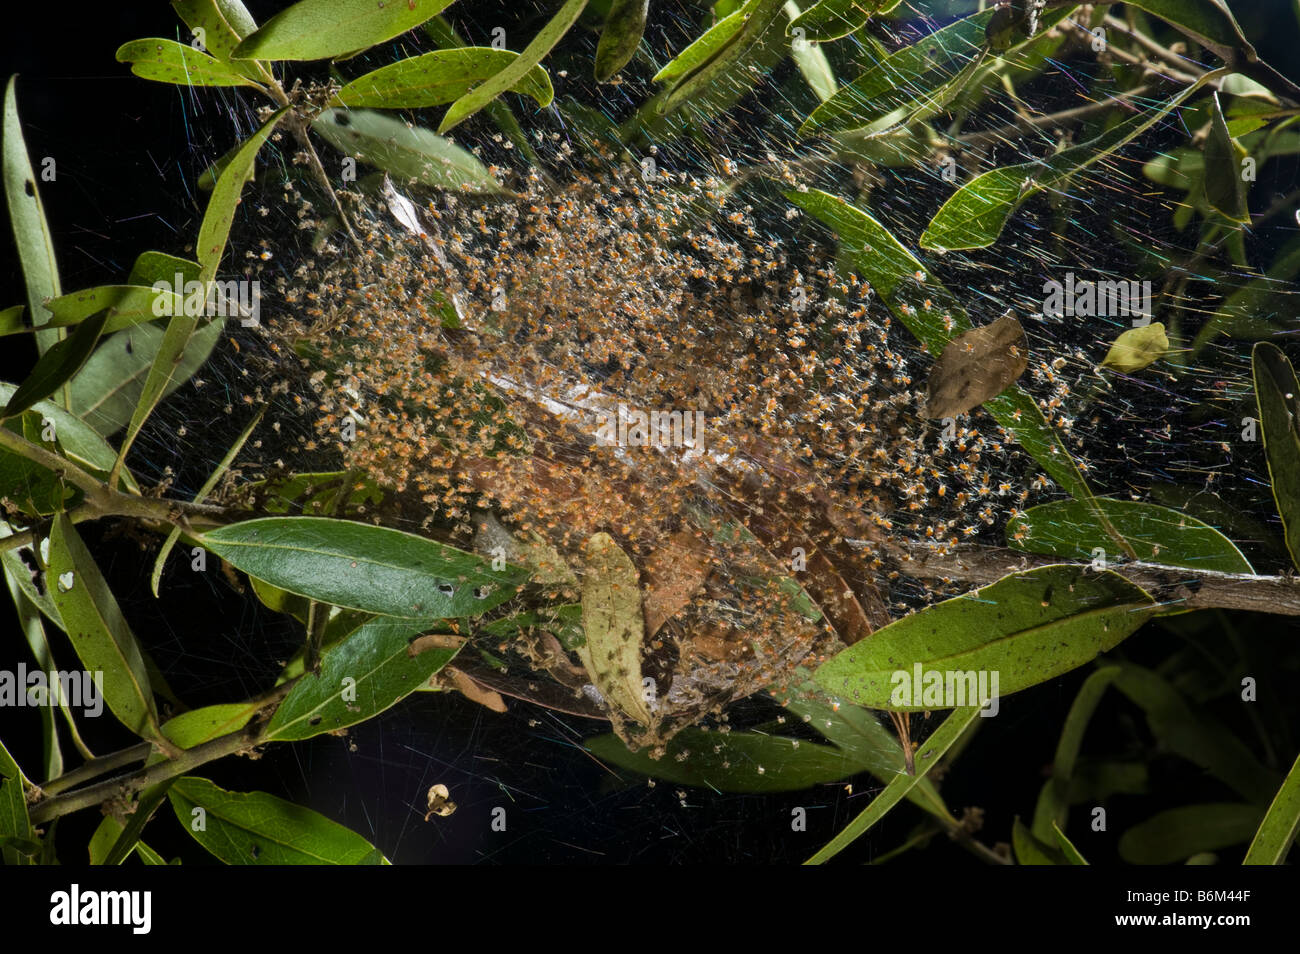 Les araignées sociales Stegodyphus insectes de la faune sauvage de la communauté multi espèces nocturnes des milliers beaucoup peu de travail araignées tog Banque D'Images